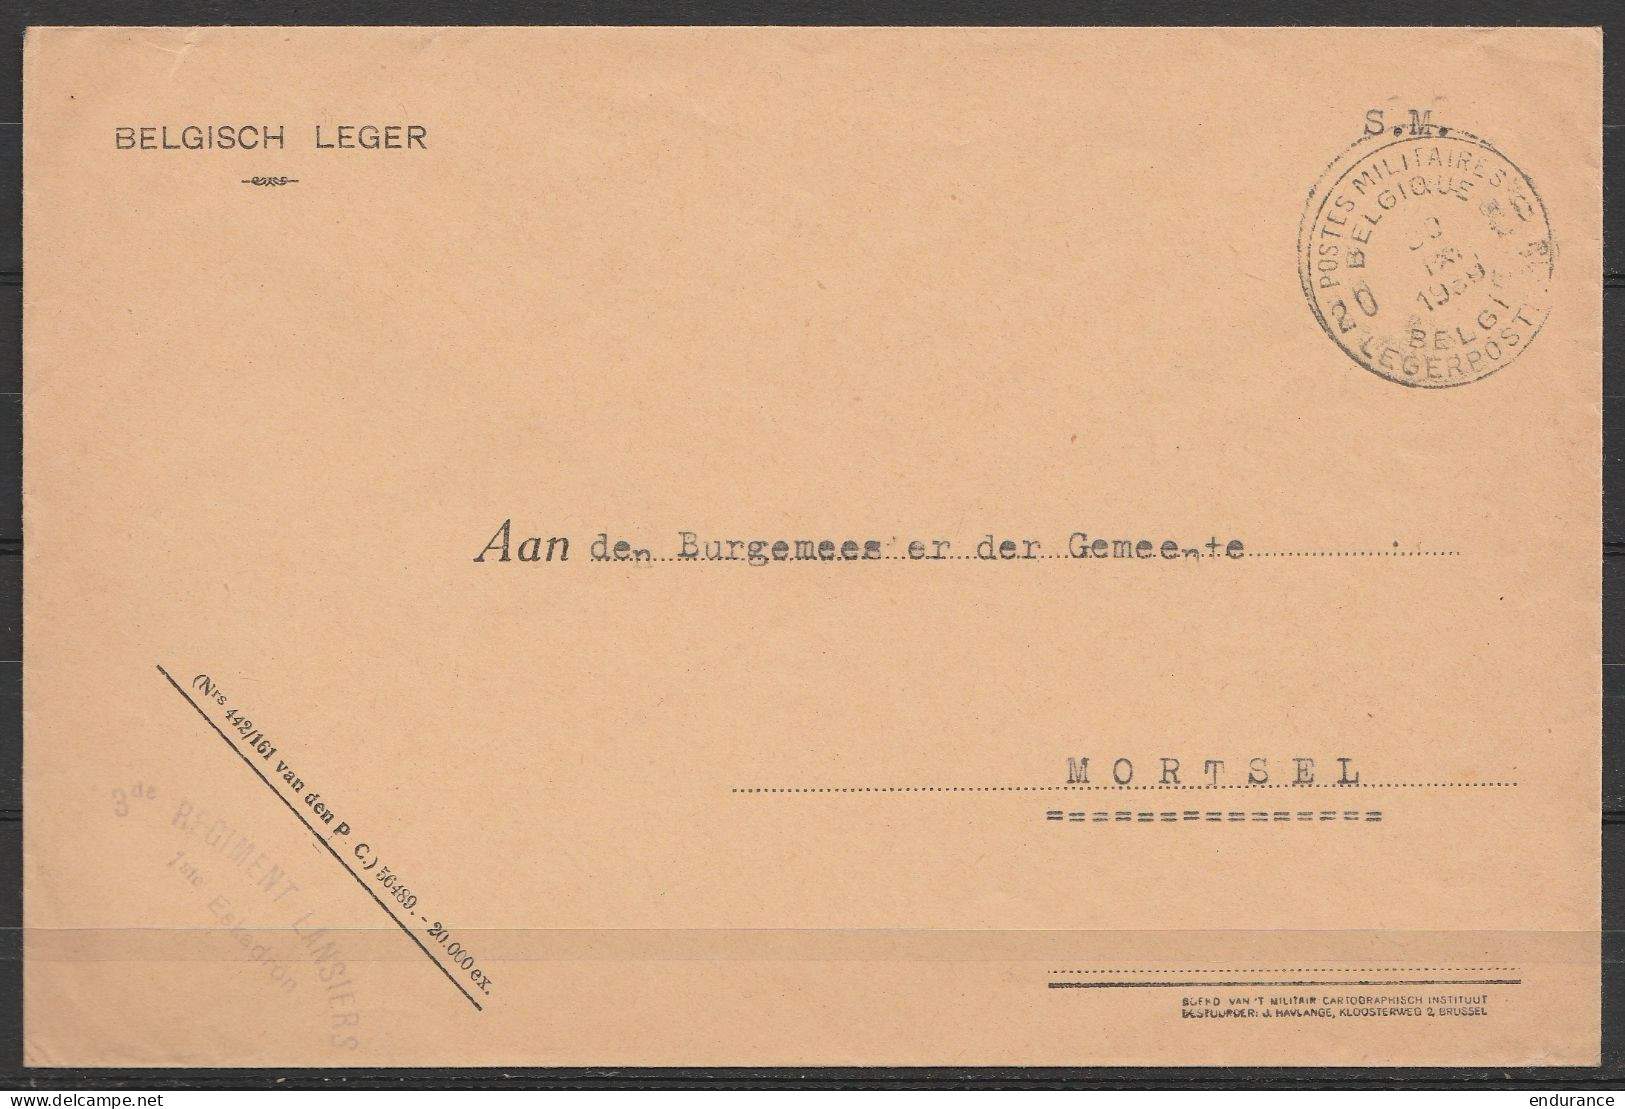 L. Entête "Belgisch Leger" En S.M. (Service Militaire) Franchise - Càd POSTES MILITAIRES BELGIQUE 20/30 IX 1939 - Griffe - Briefe U. Dokumente